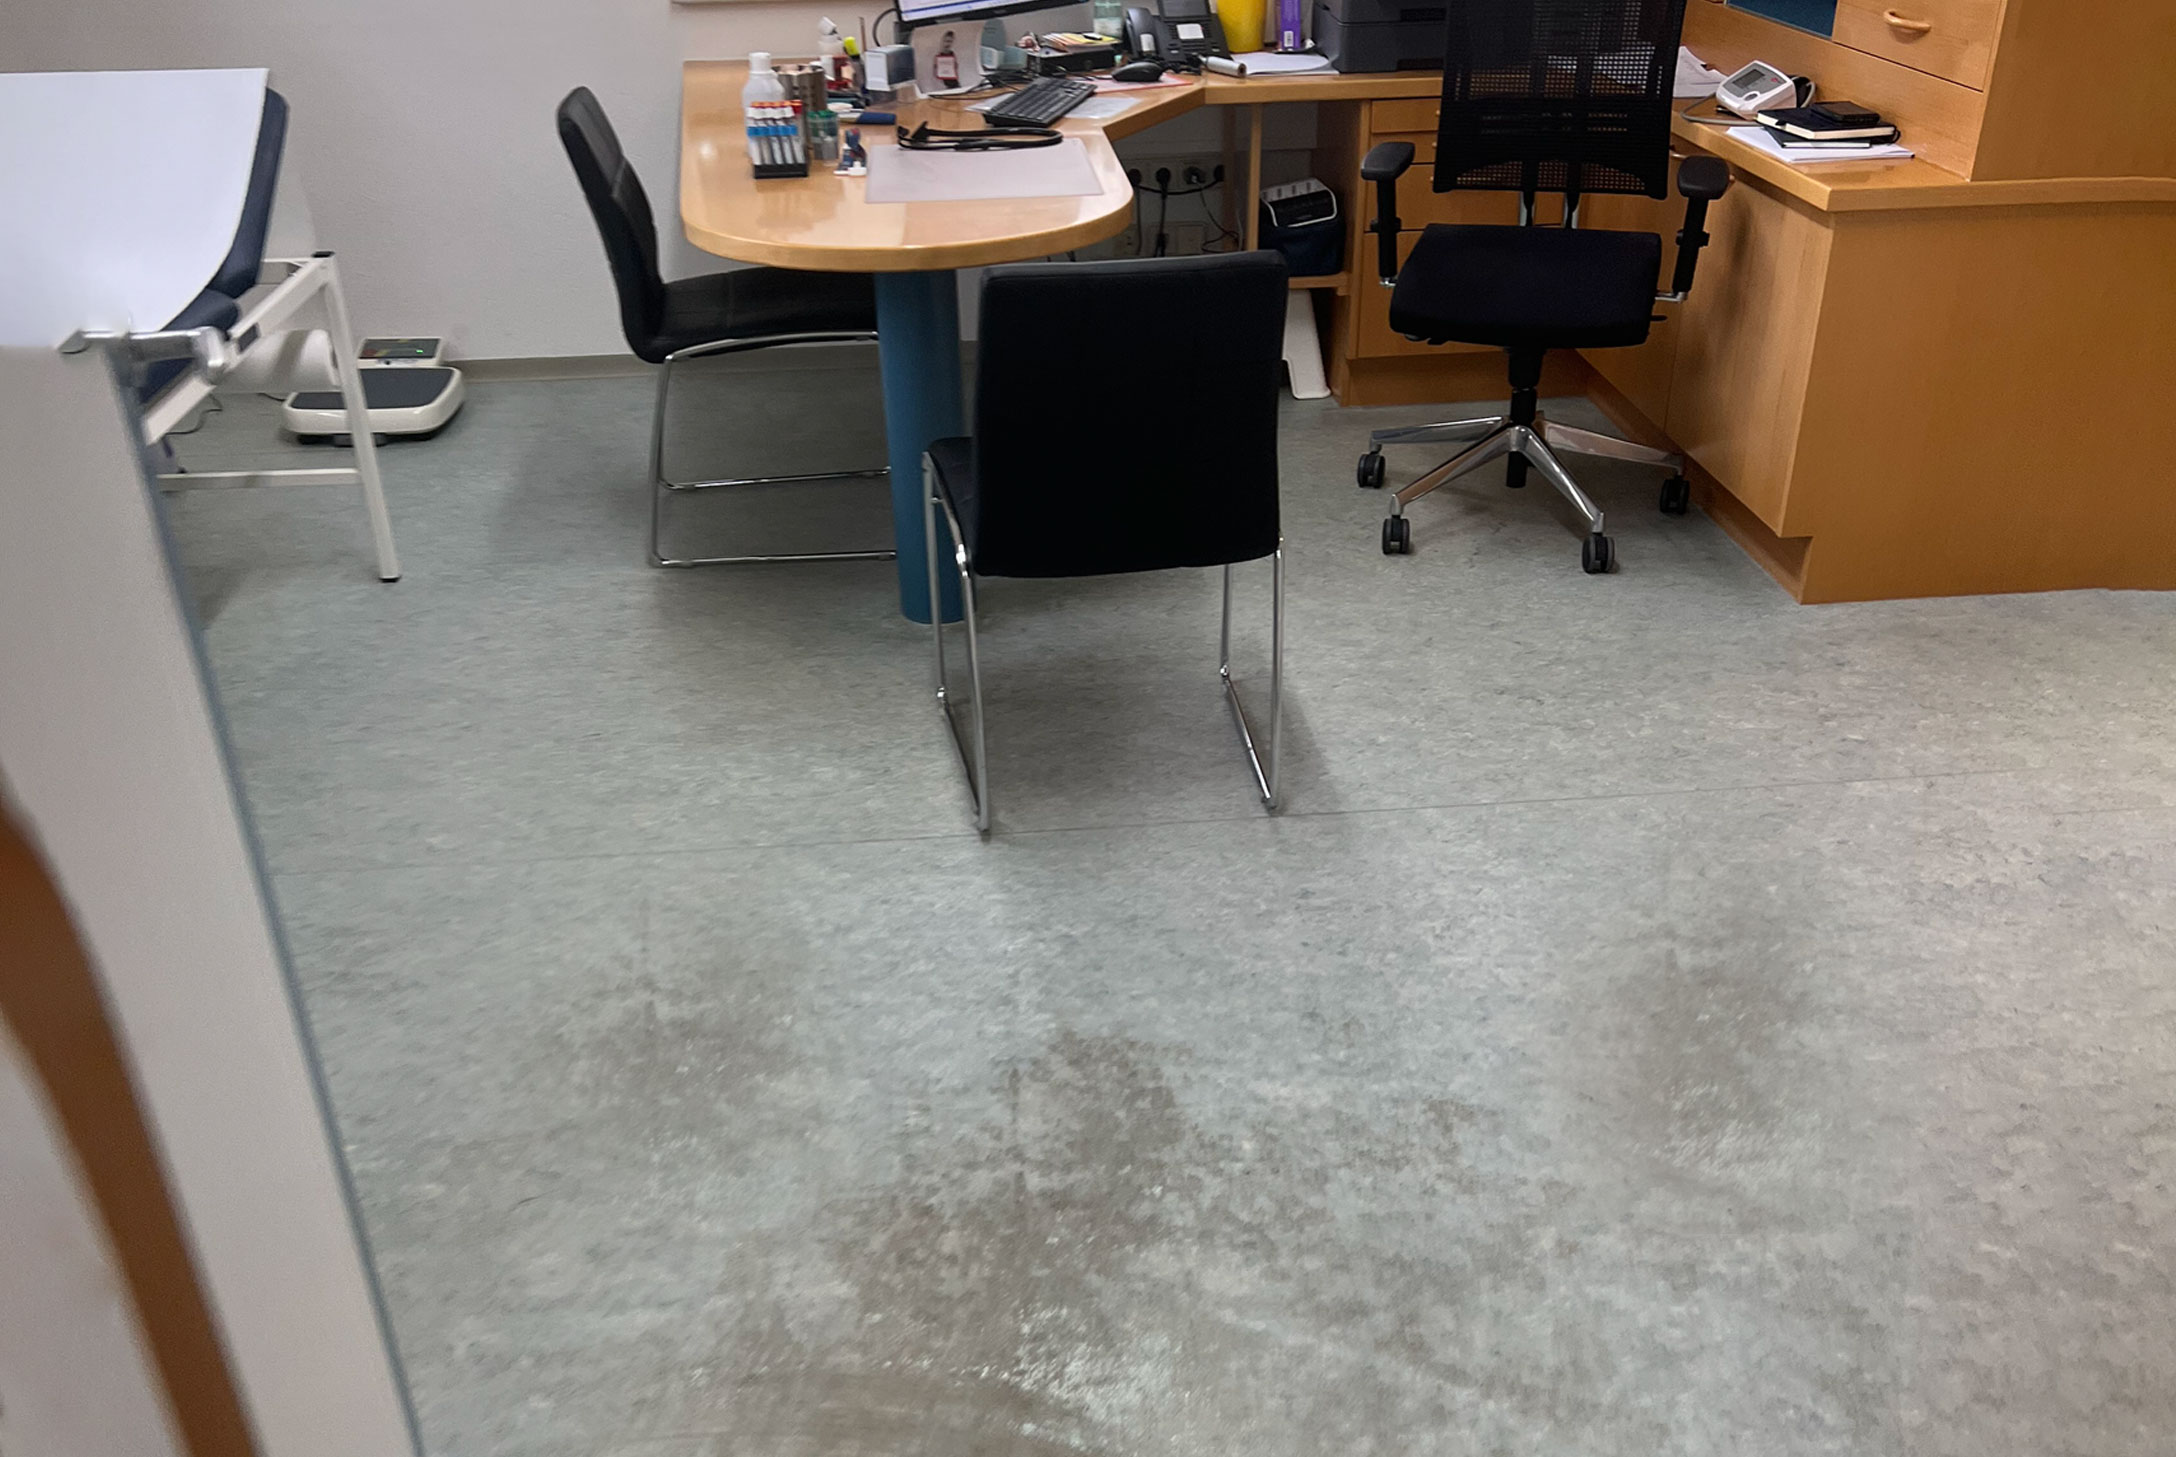 Bild zeigt beschädigten grauen Kunststoffboden vor der Sanierung einer Arztpraxis